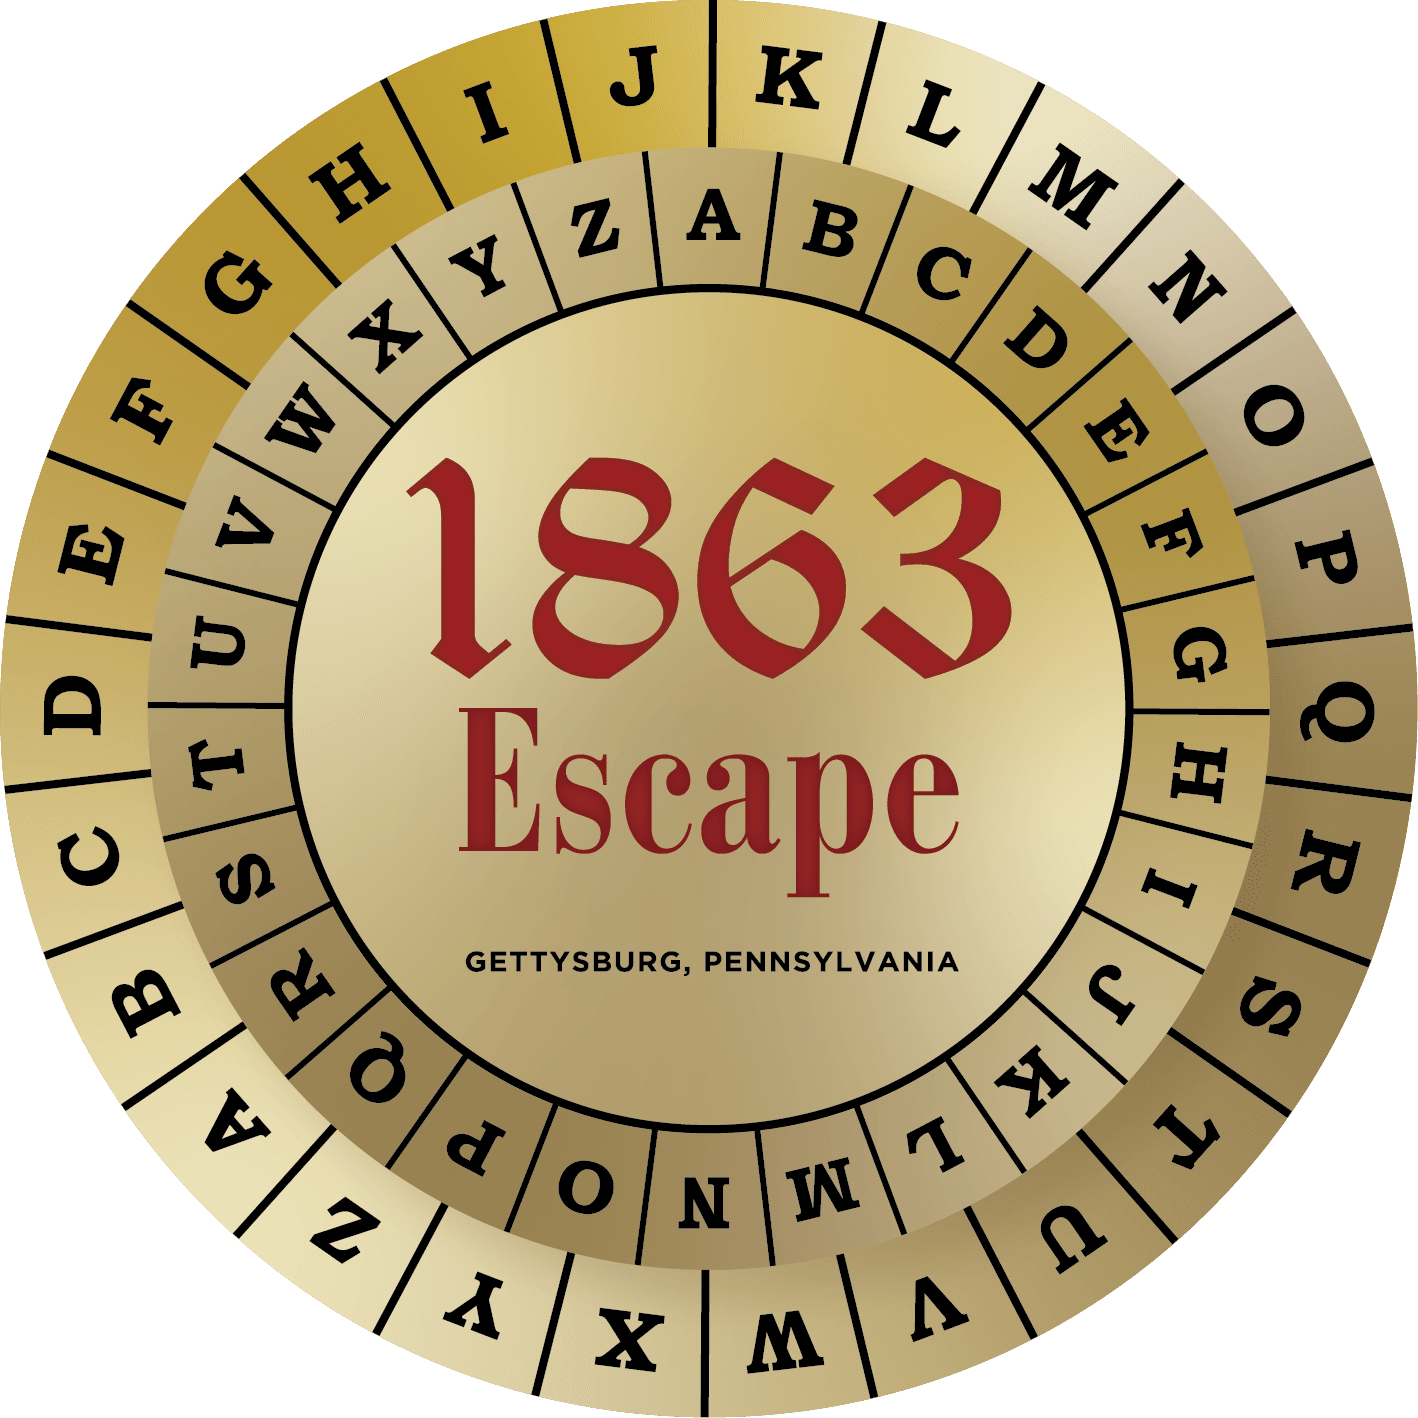 1863 Escape